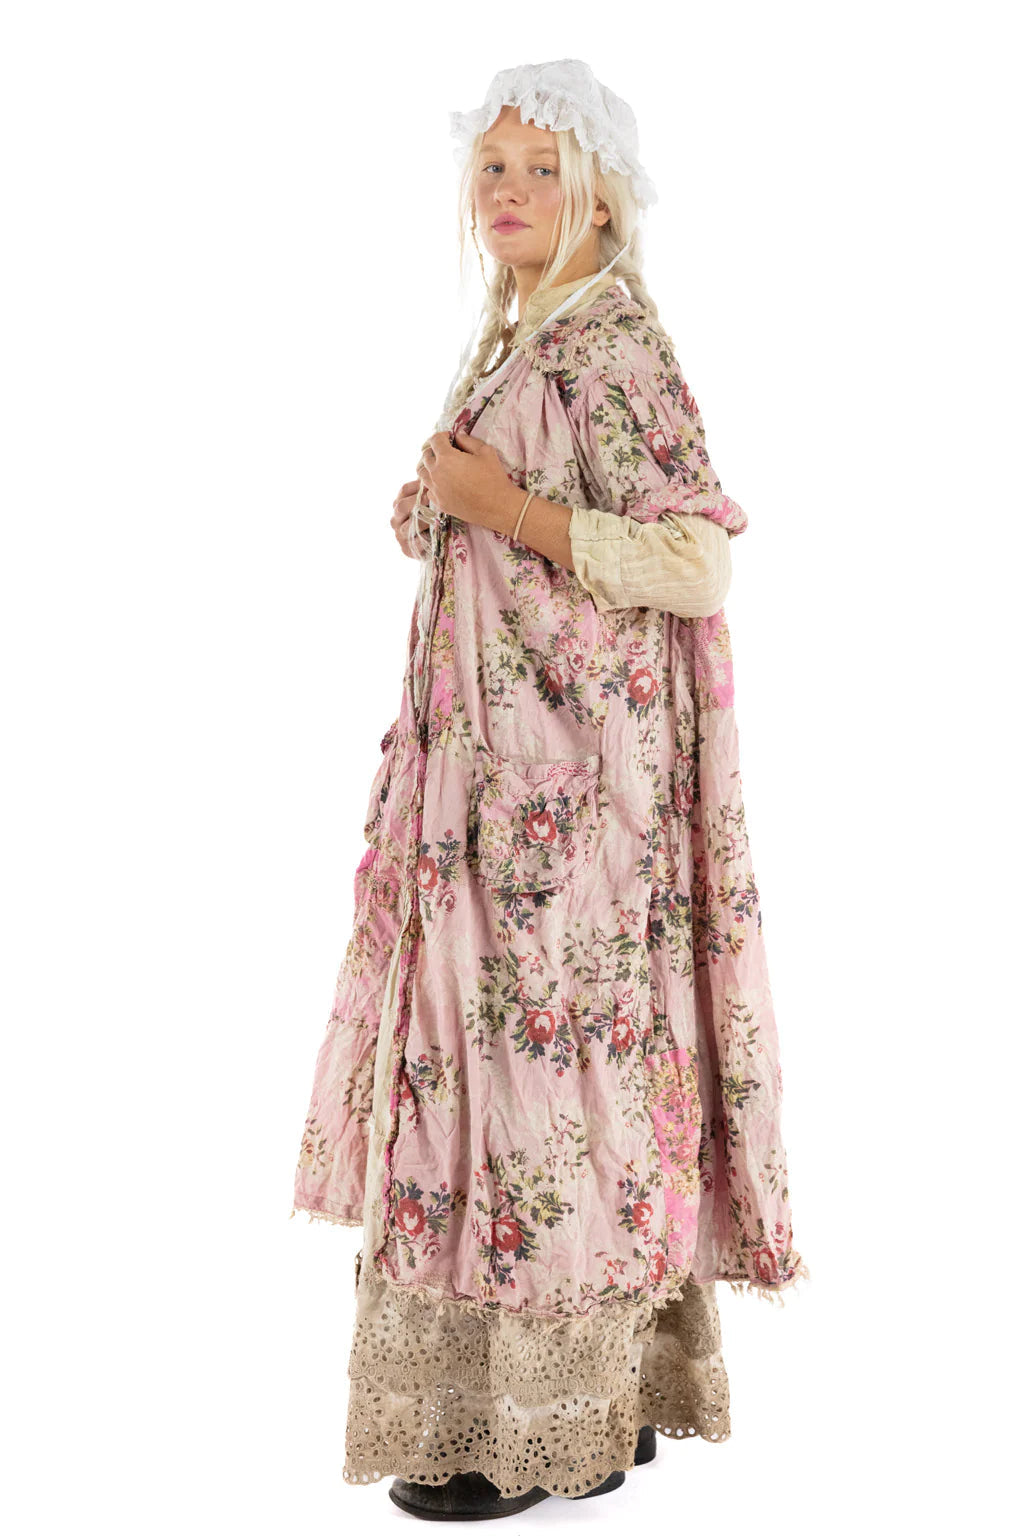 Magnolia Pearl Floral Lila Bell Dress - DRESS 922